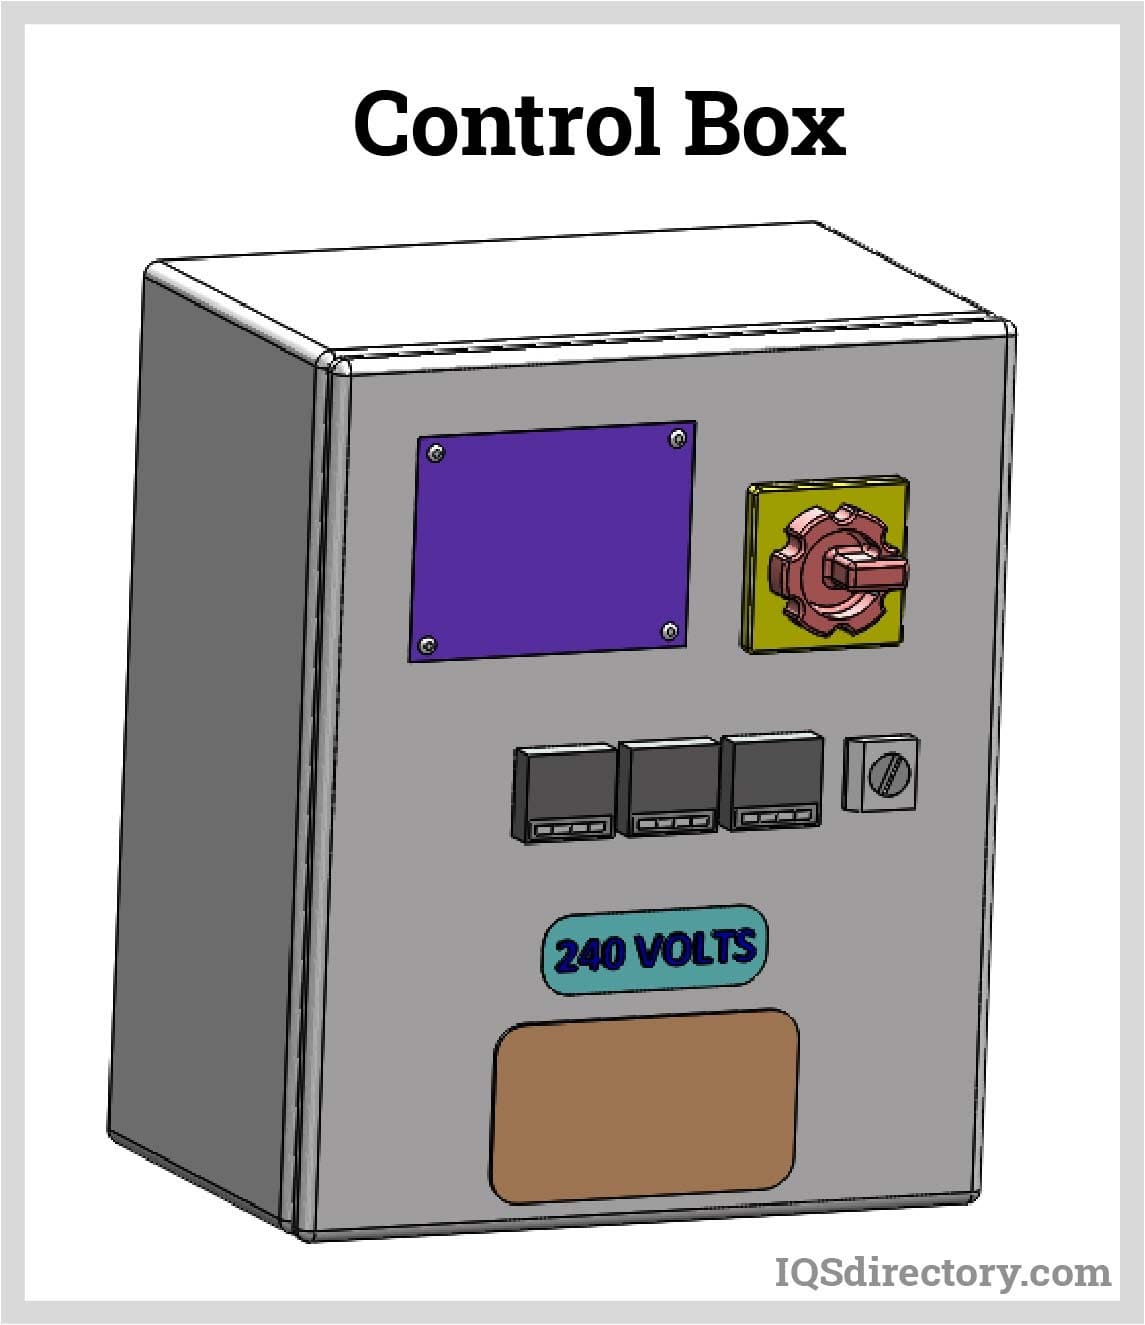 Control Box